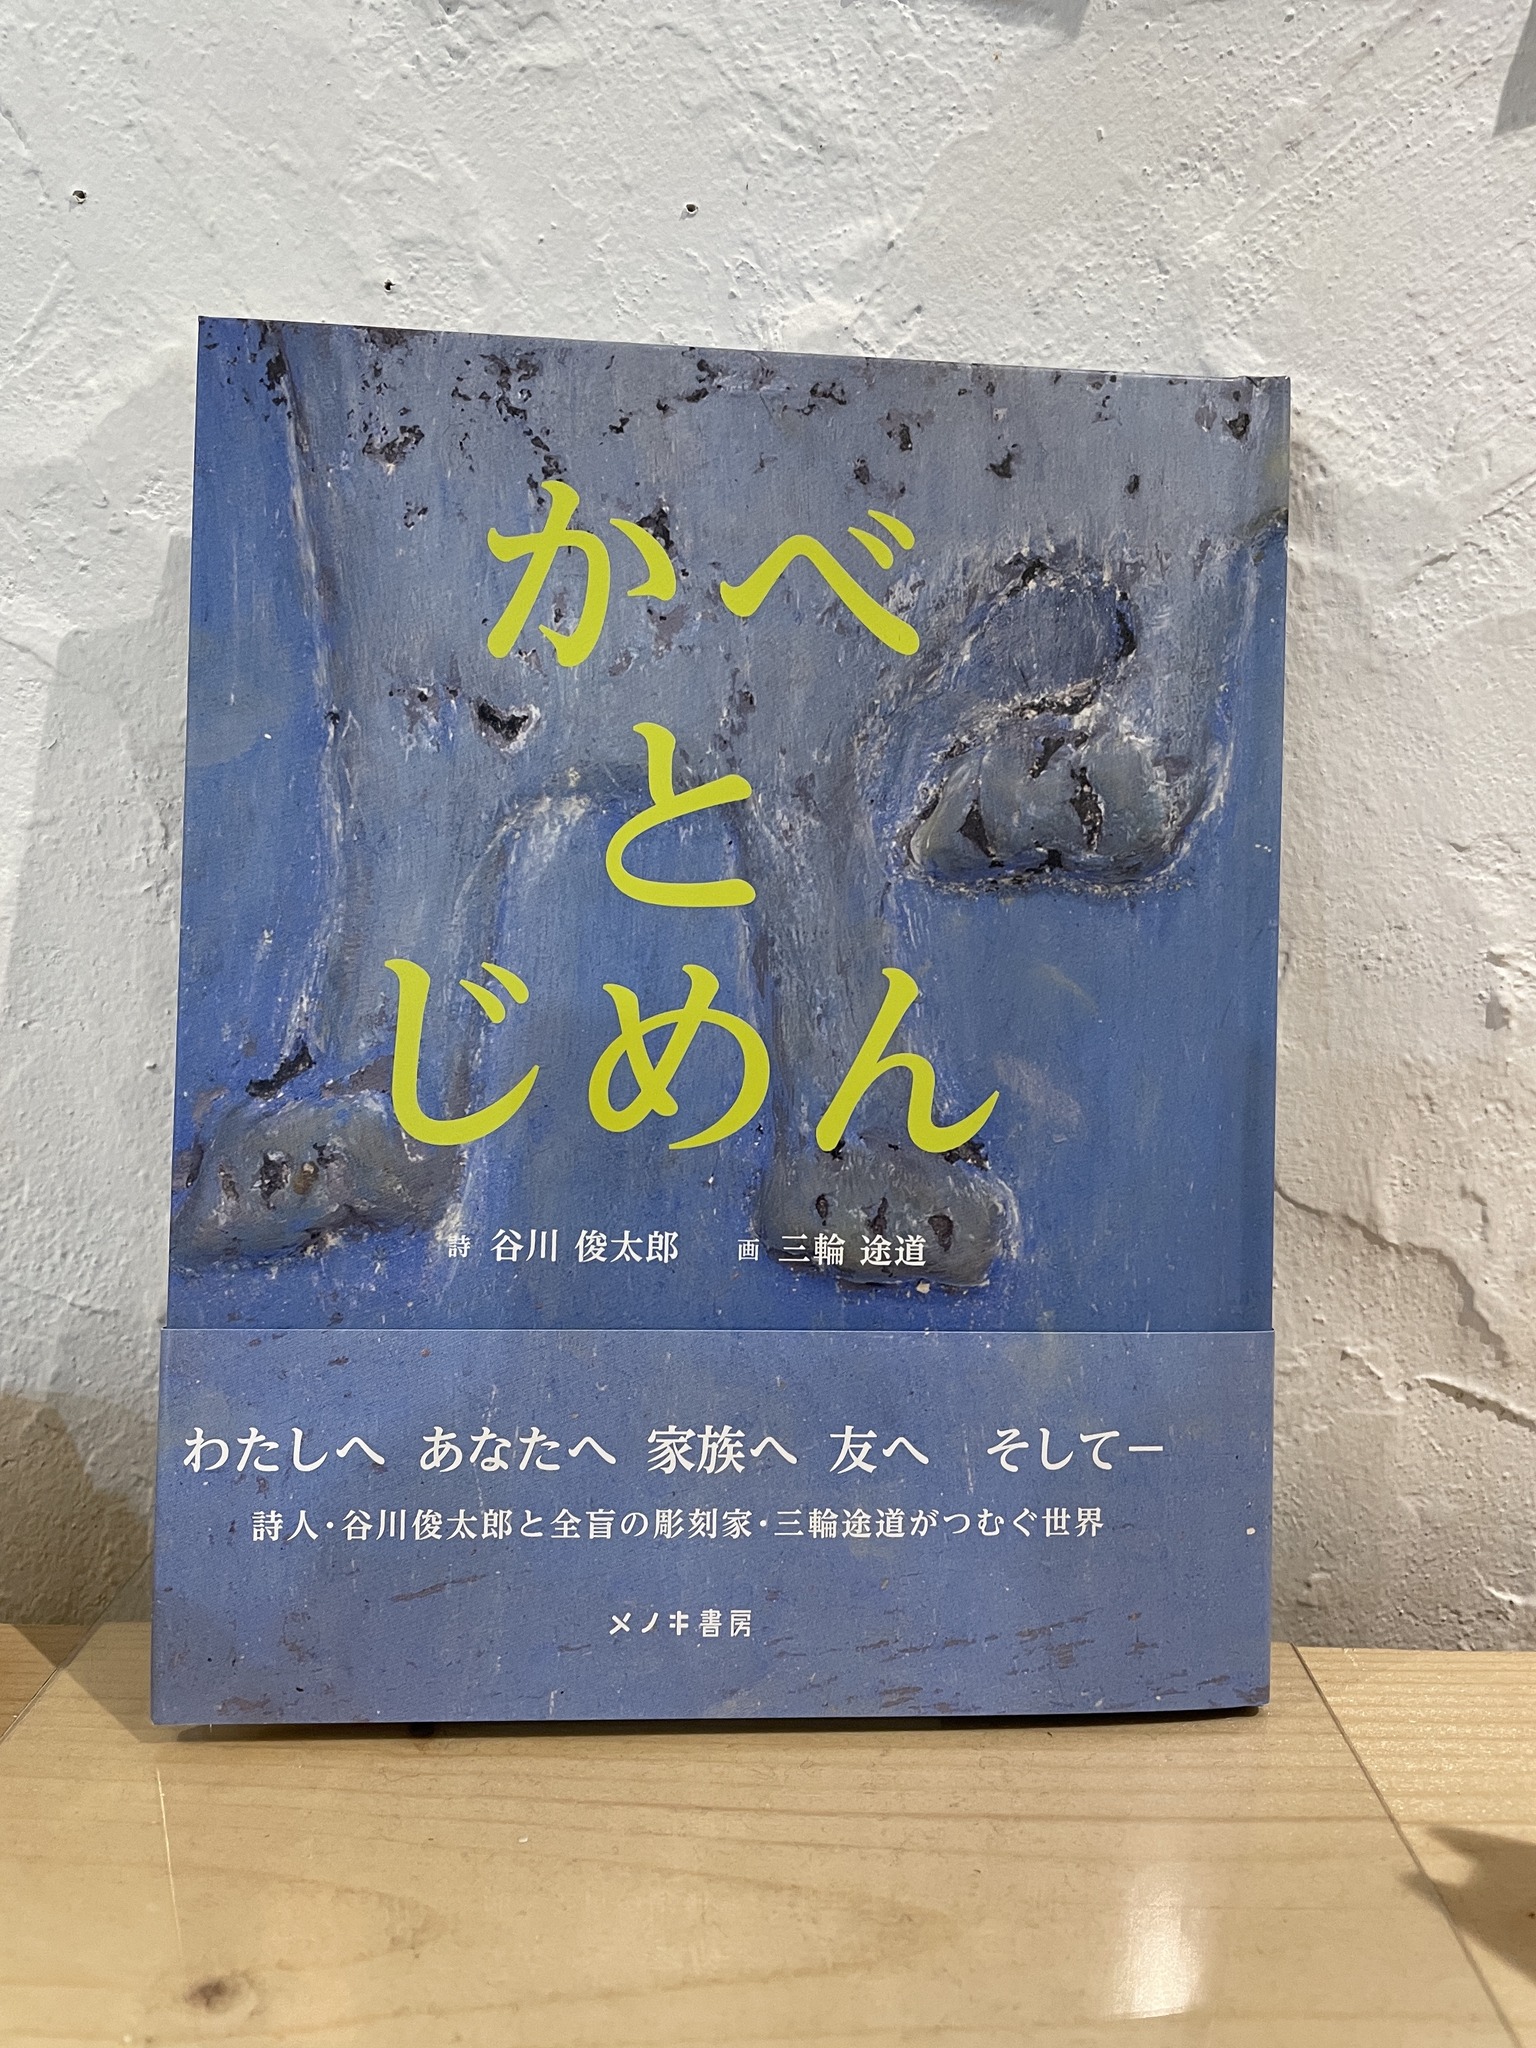 盲目の彫刻家・三輪途道氏の作品に俊太郎さんが言葉をつけた『かべとじめん』入荷しました。